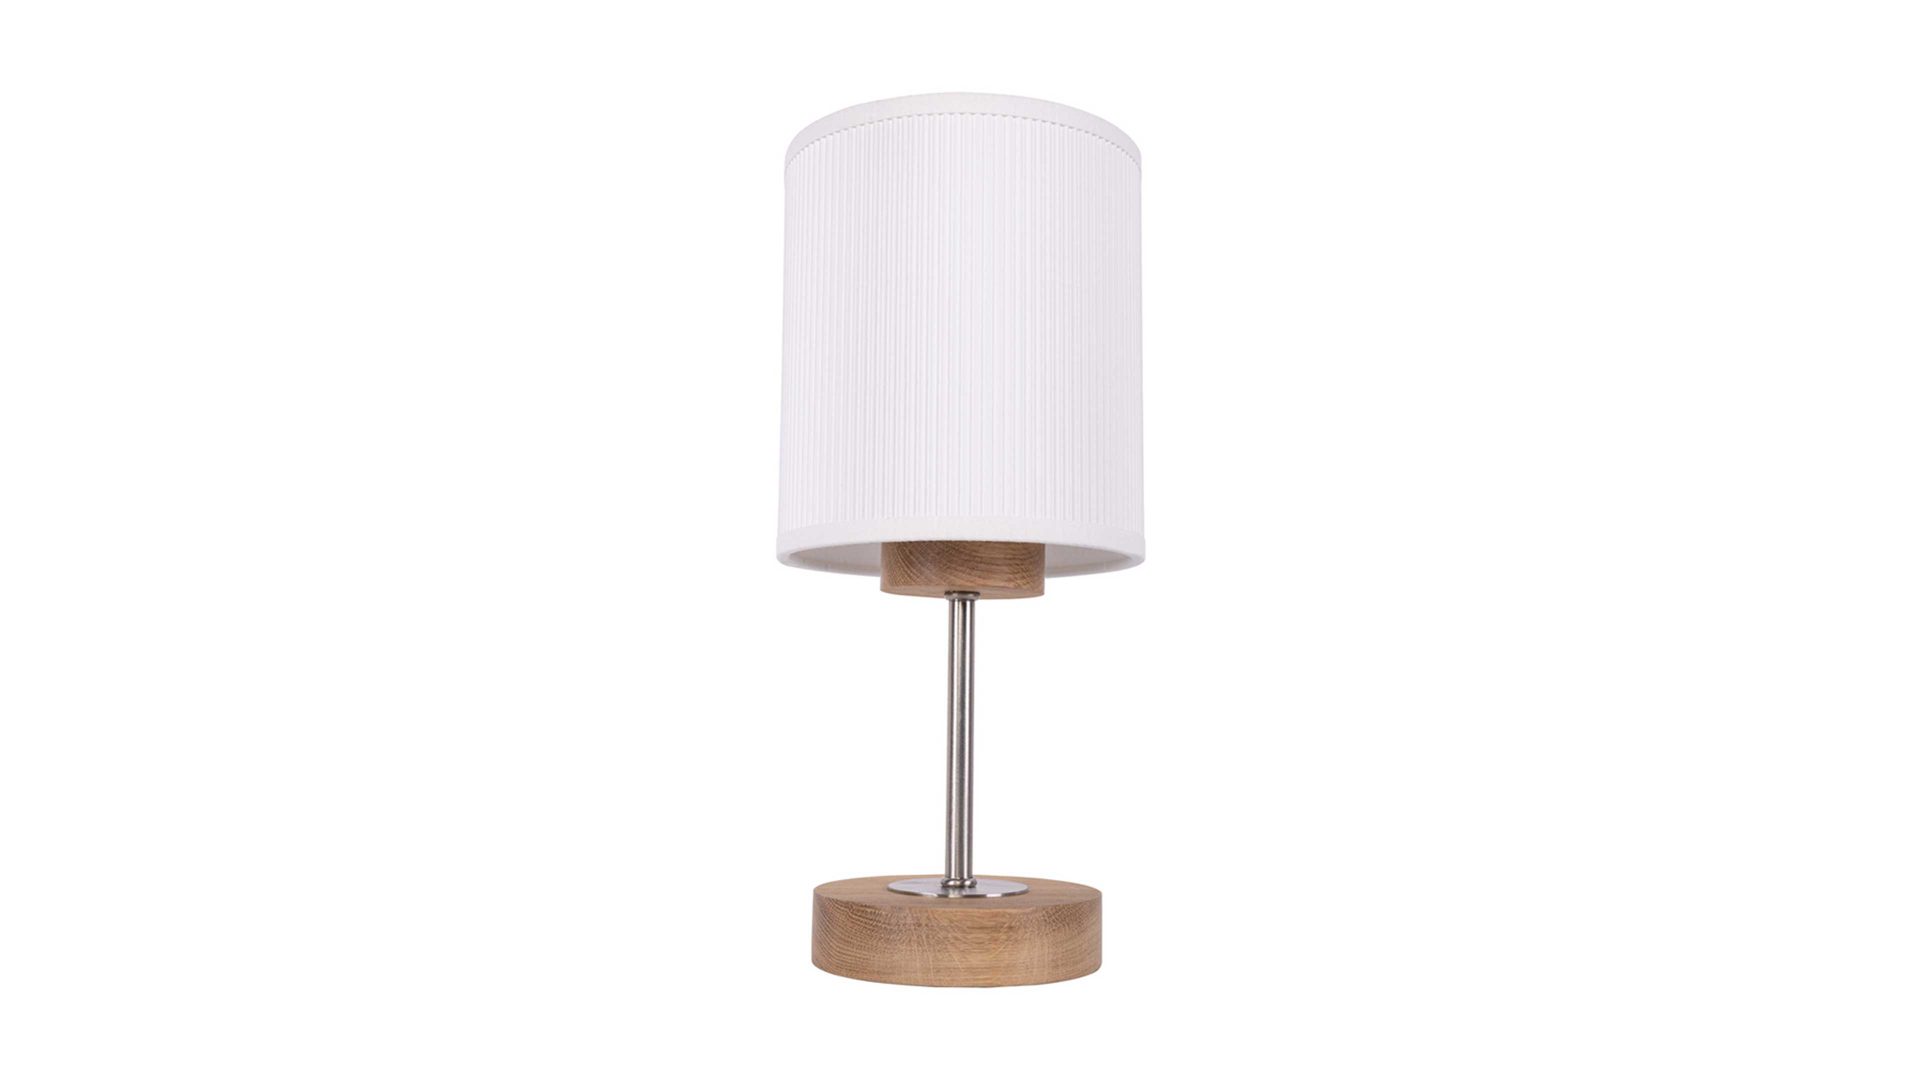 Tischleuchte Spot light aus Karton / Papier / Pappe in Weiß SPOT LIGHT Leuchten Serie Lorios - Tischlampe weiße Zellulose & Eiche - Höhe ca. 30 cm